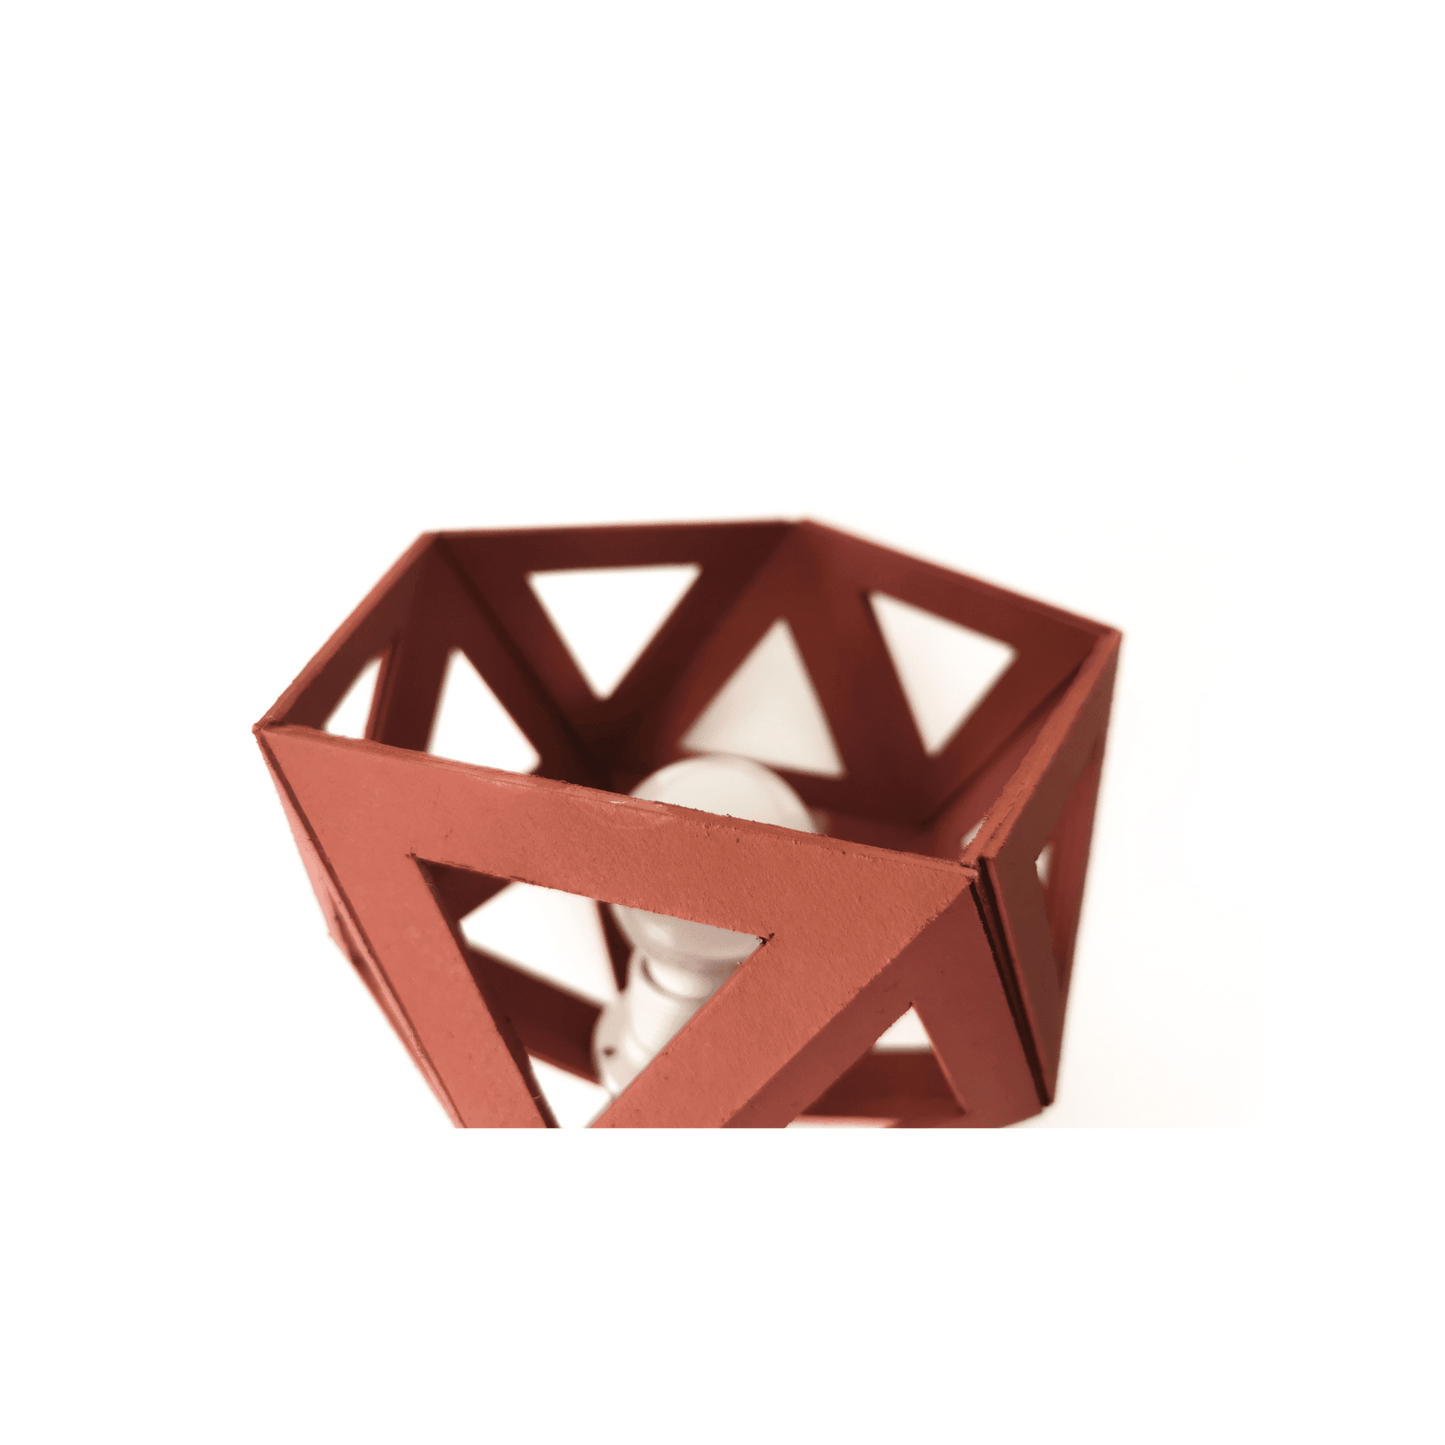 une lampe de chevet fabriquée en origami équipée d'un système led et de couleur tarracotta